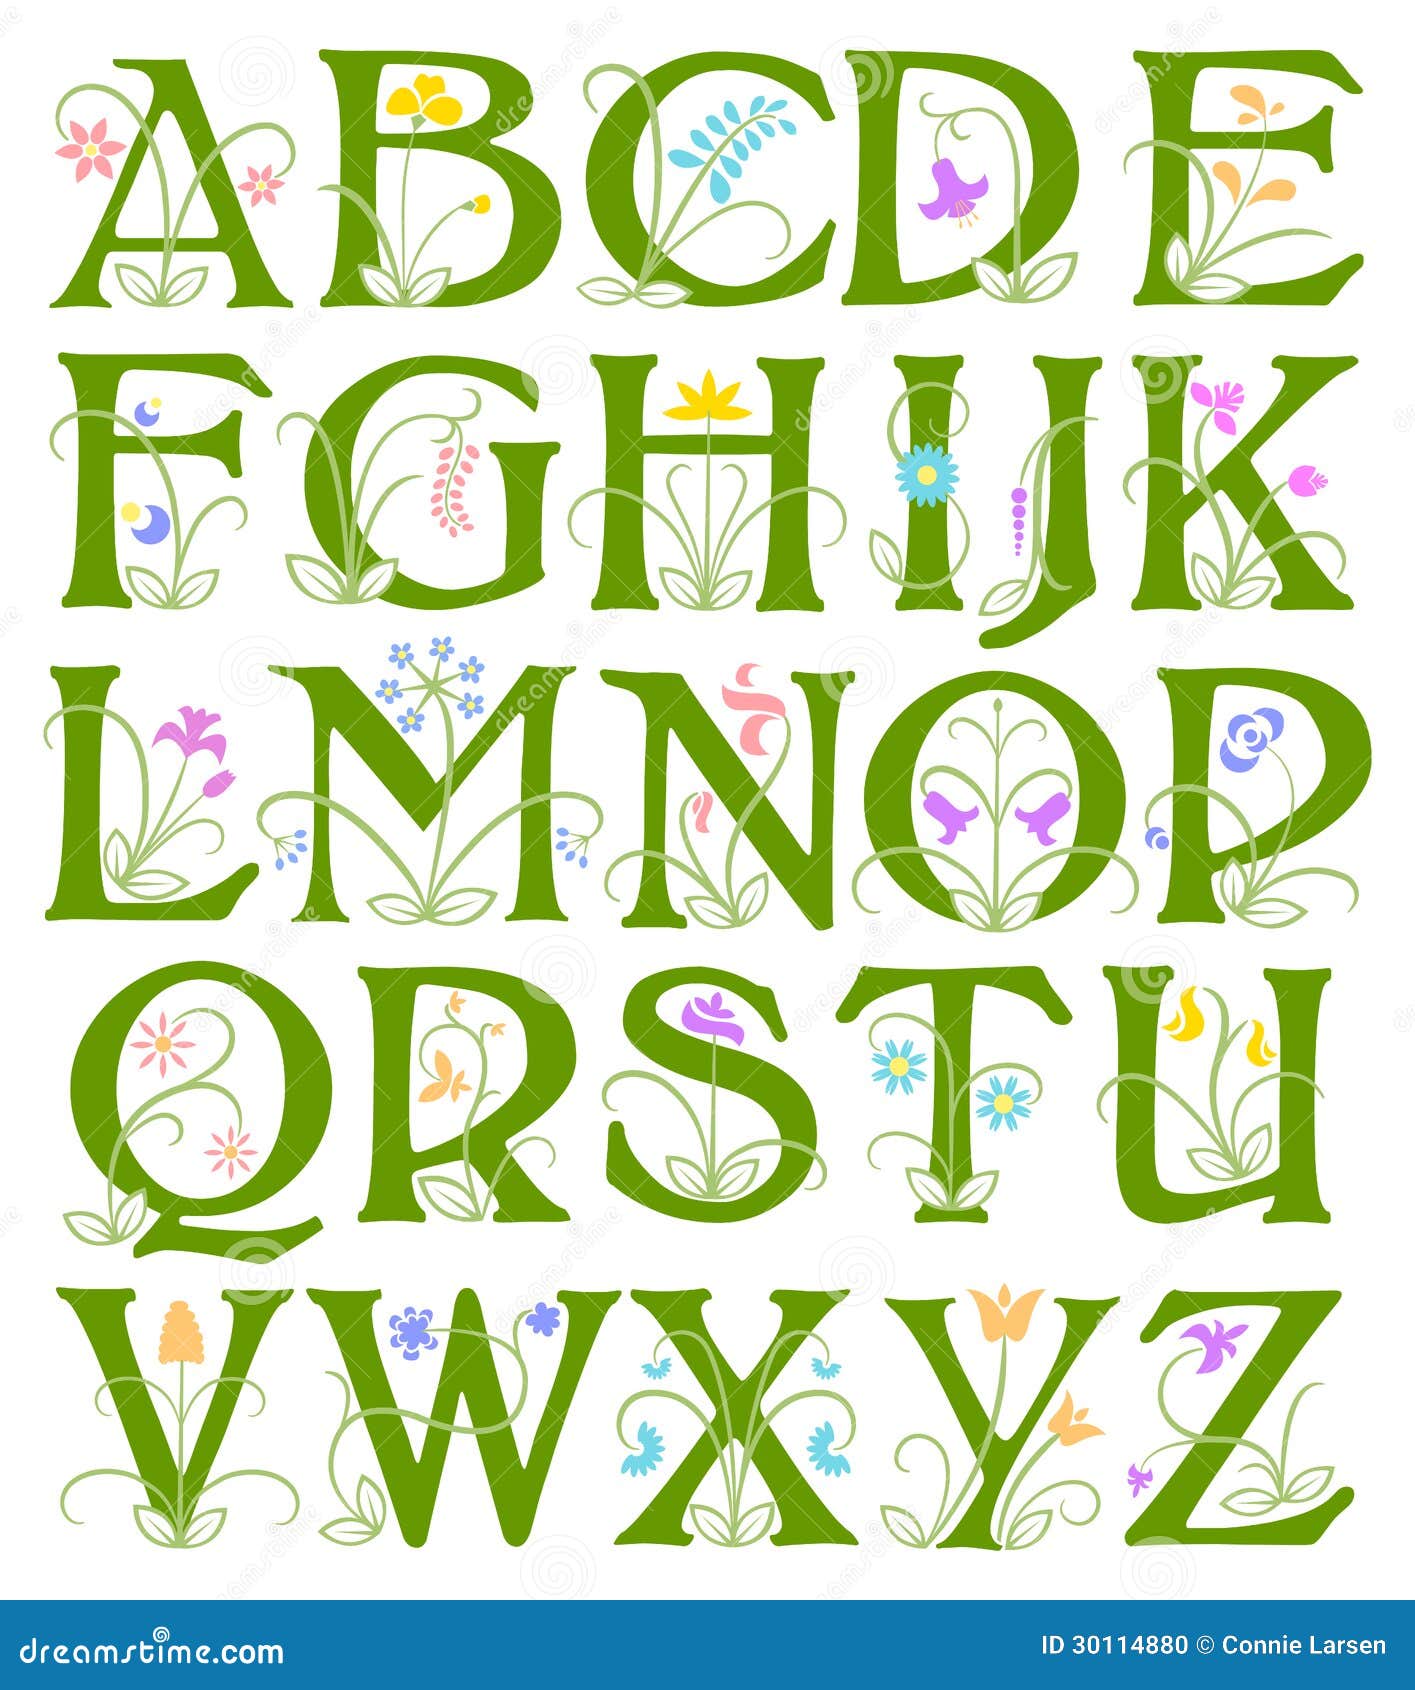 flower alphabet/eps